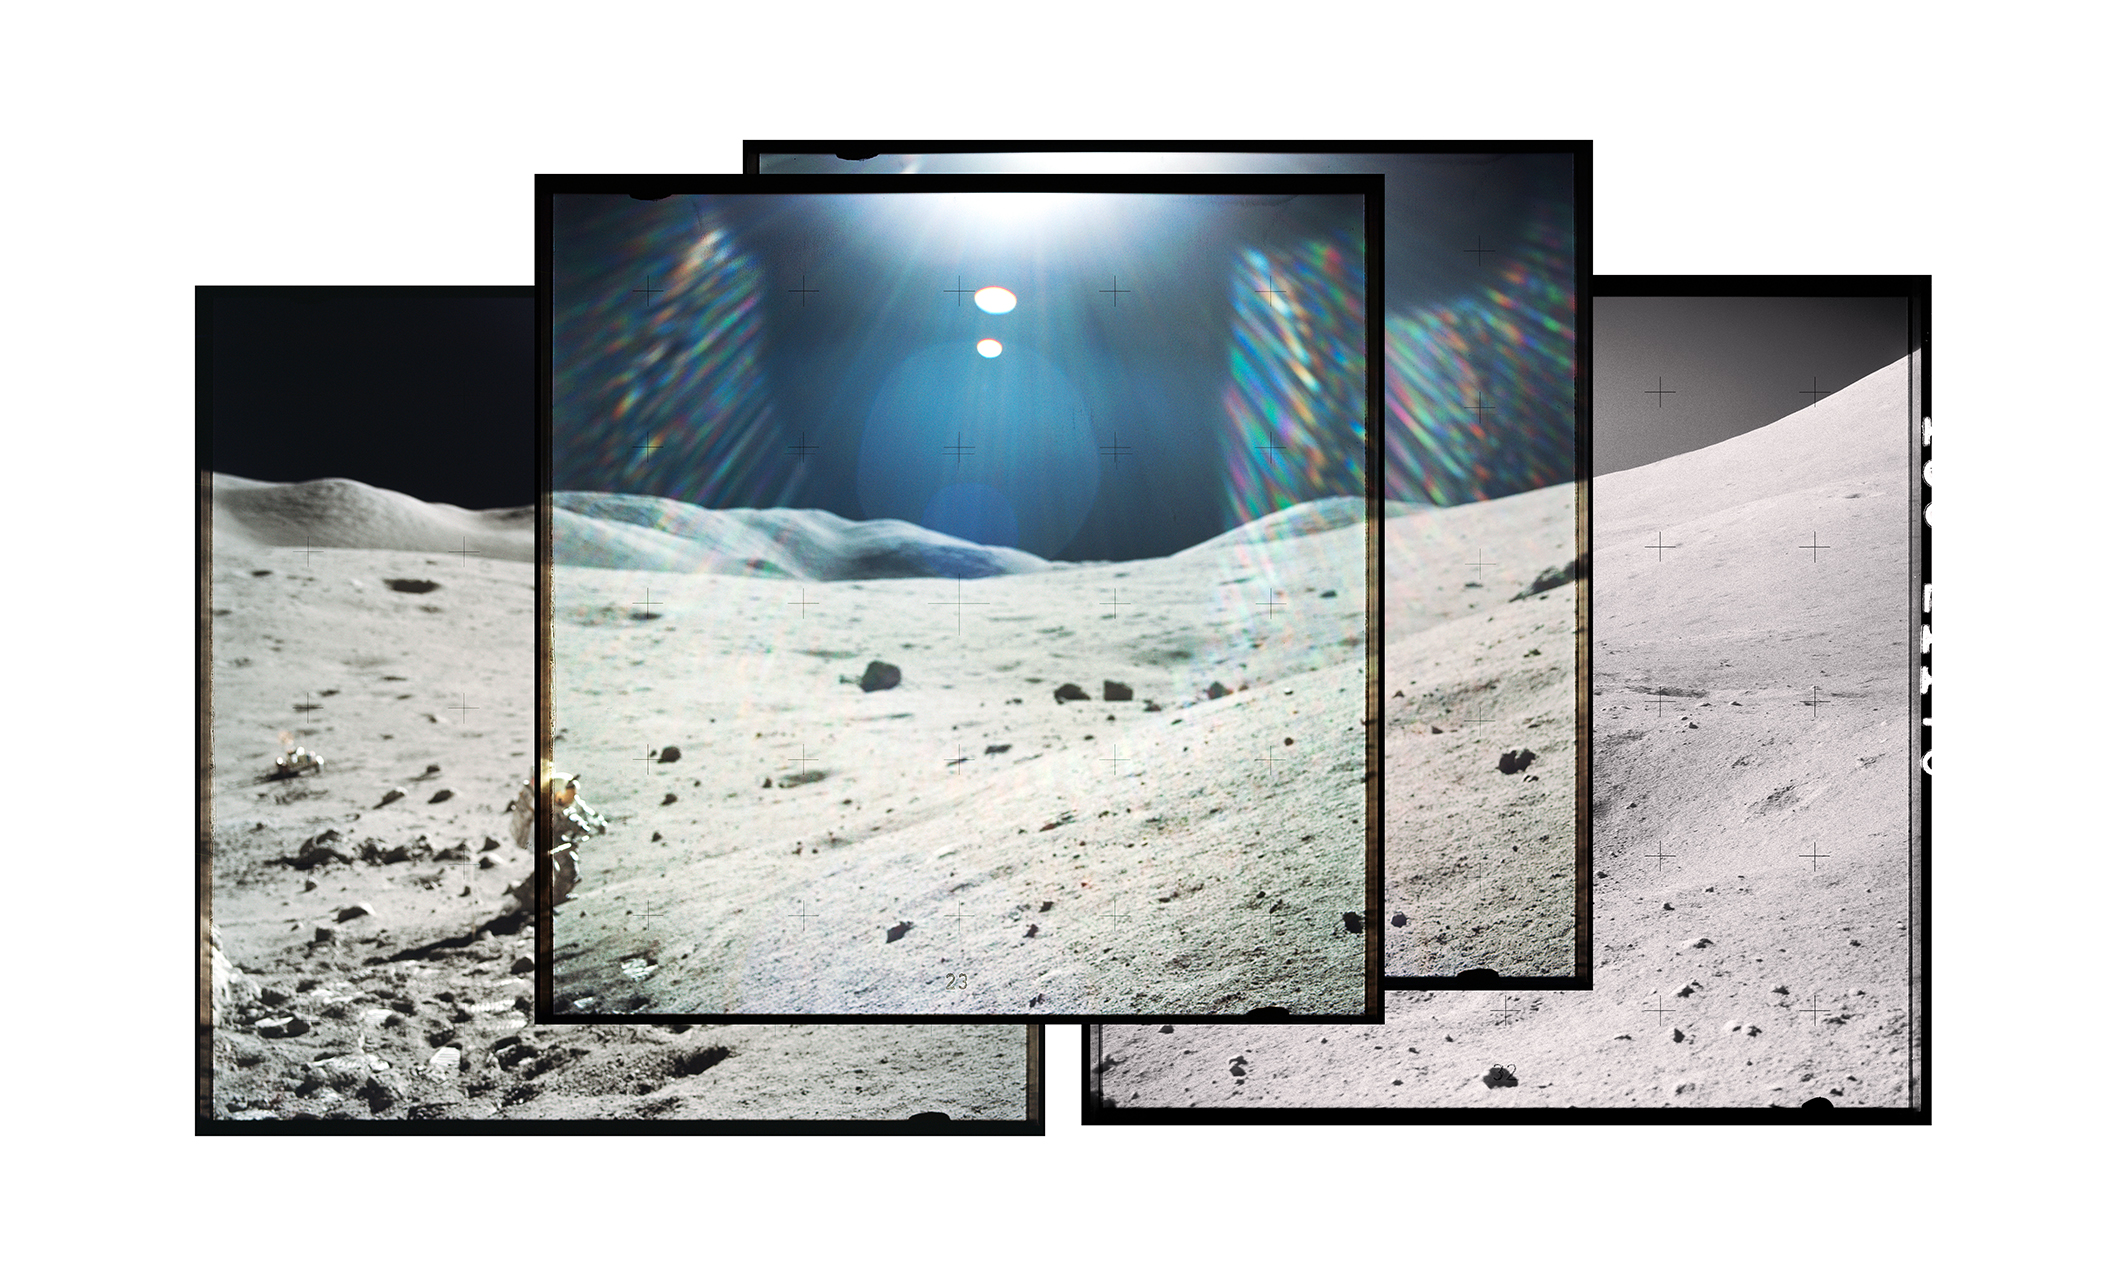 Lune et astronaute photographiés lors d'une mission Apollo